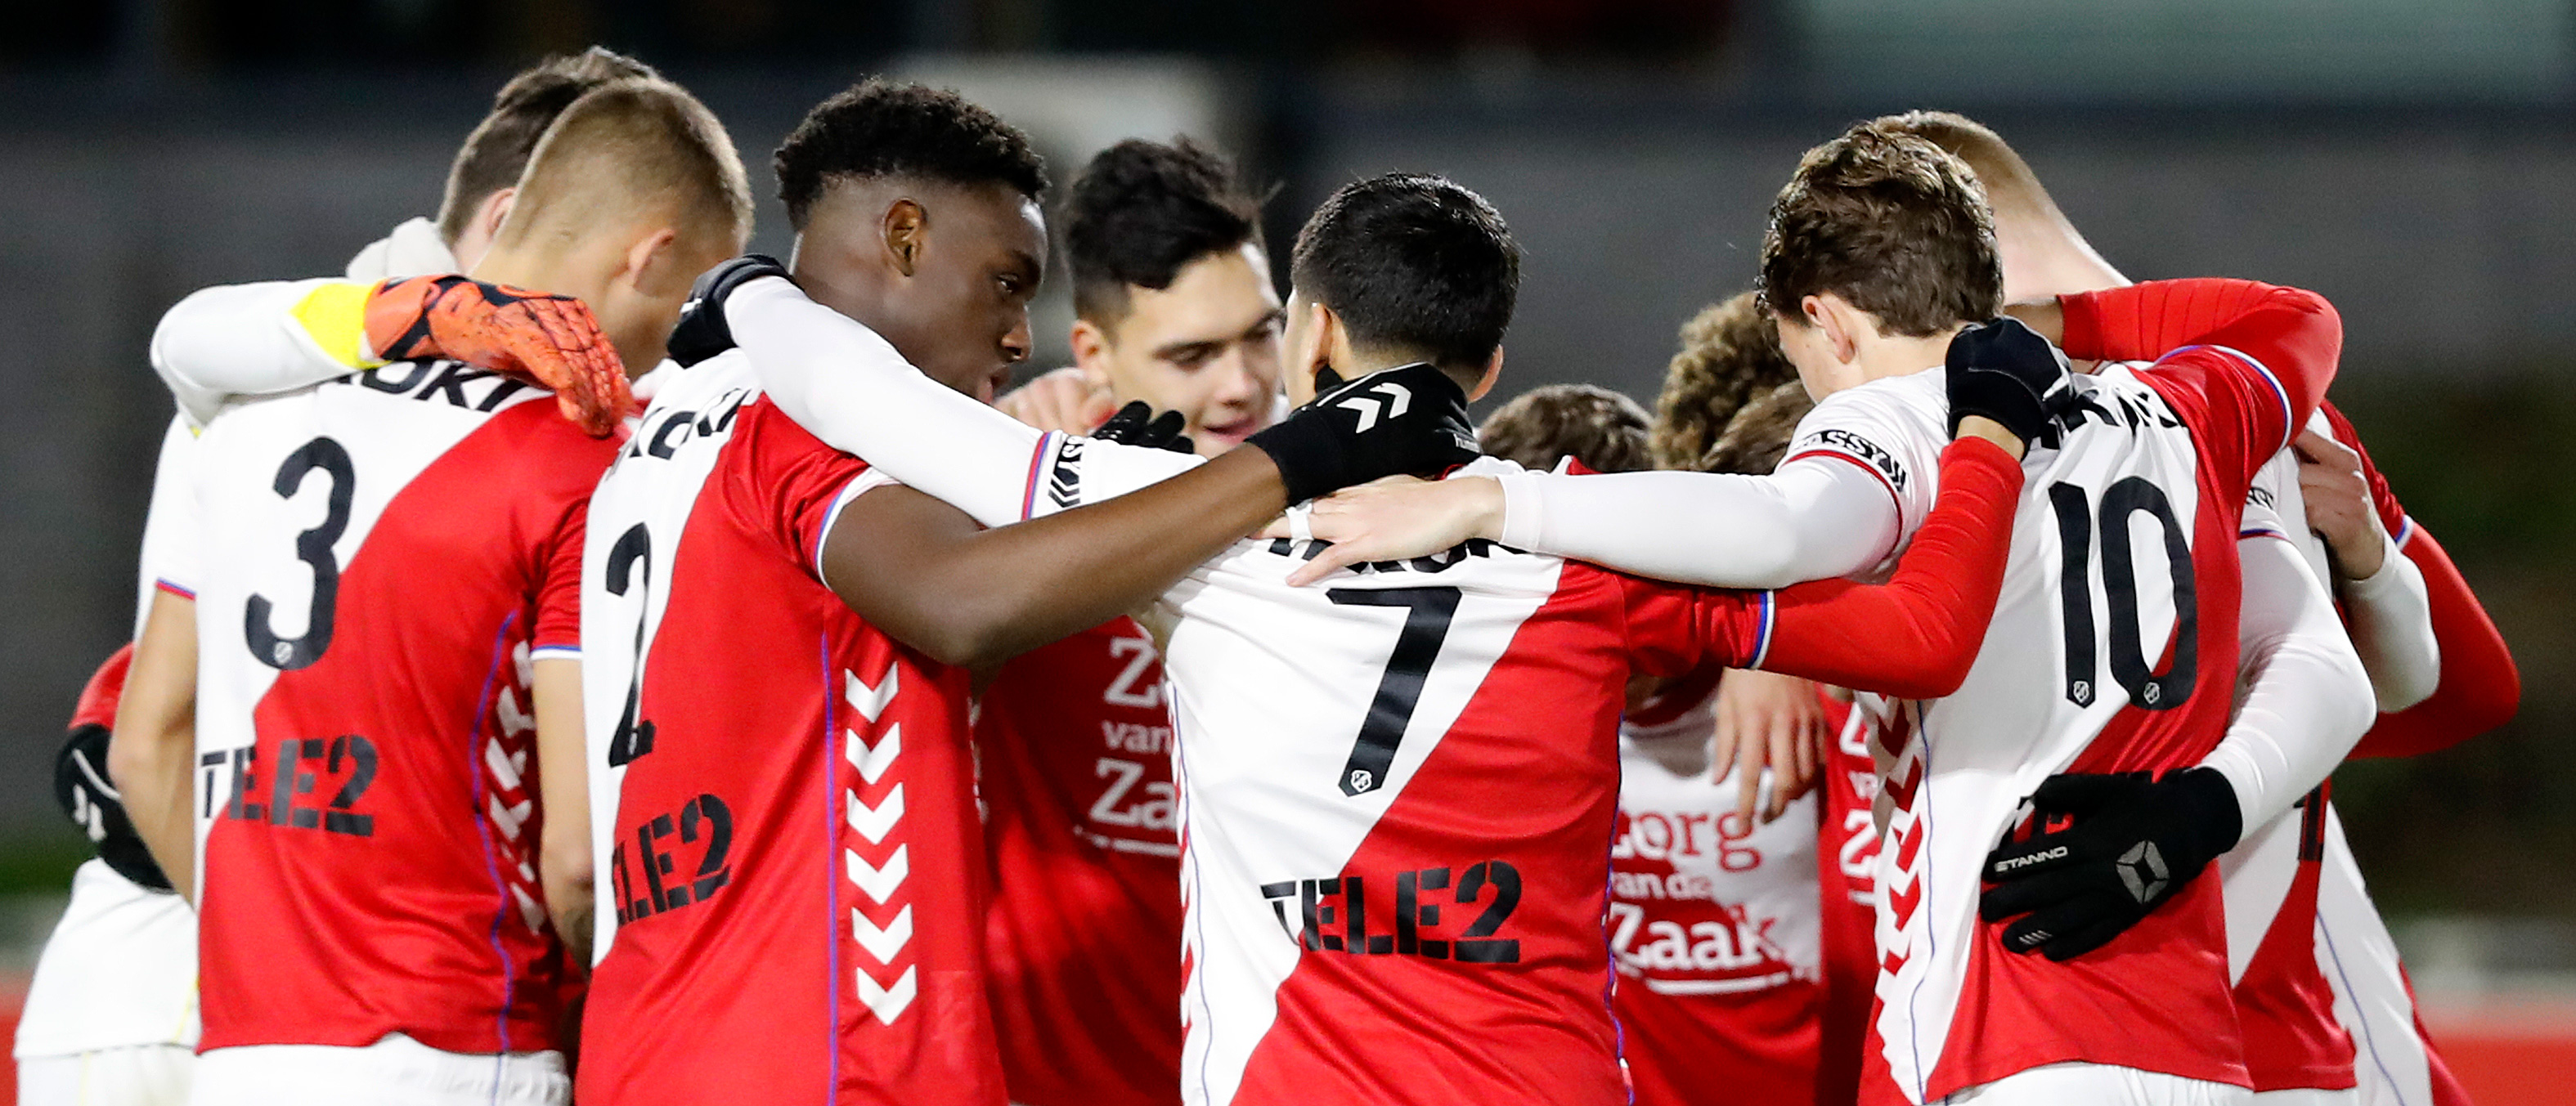 Jong FC Utrecht ontvangt Sparta Rotterdam